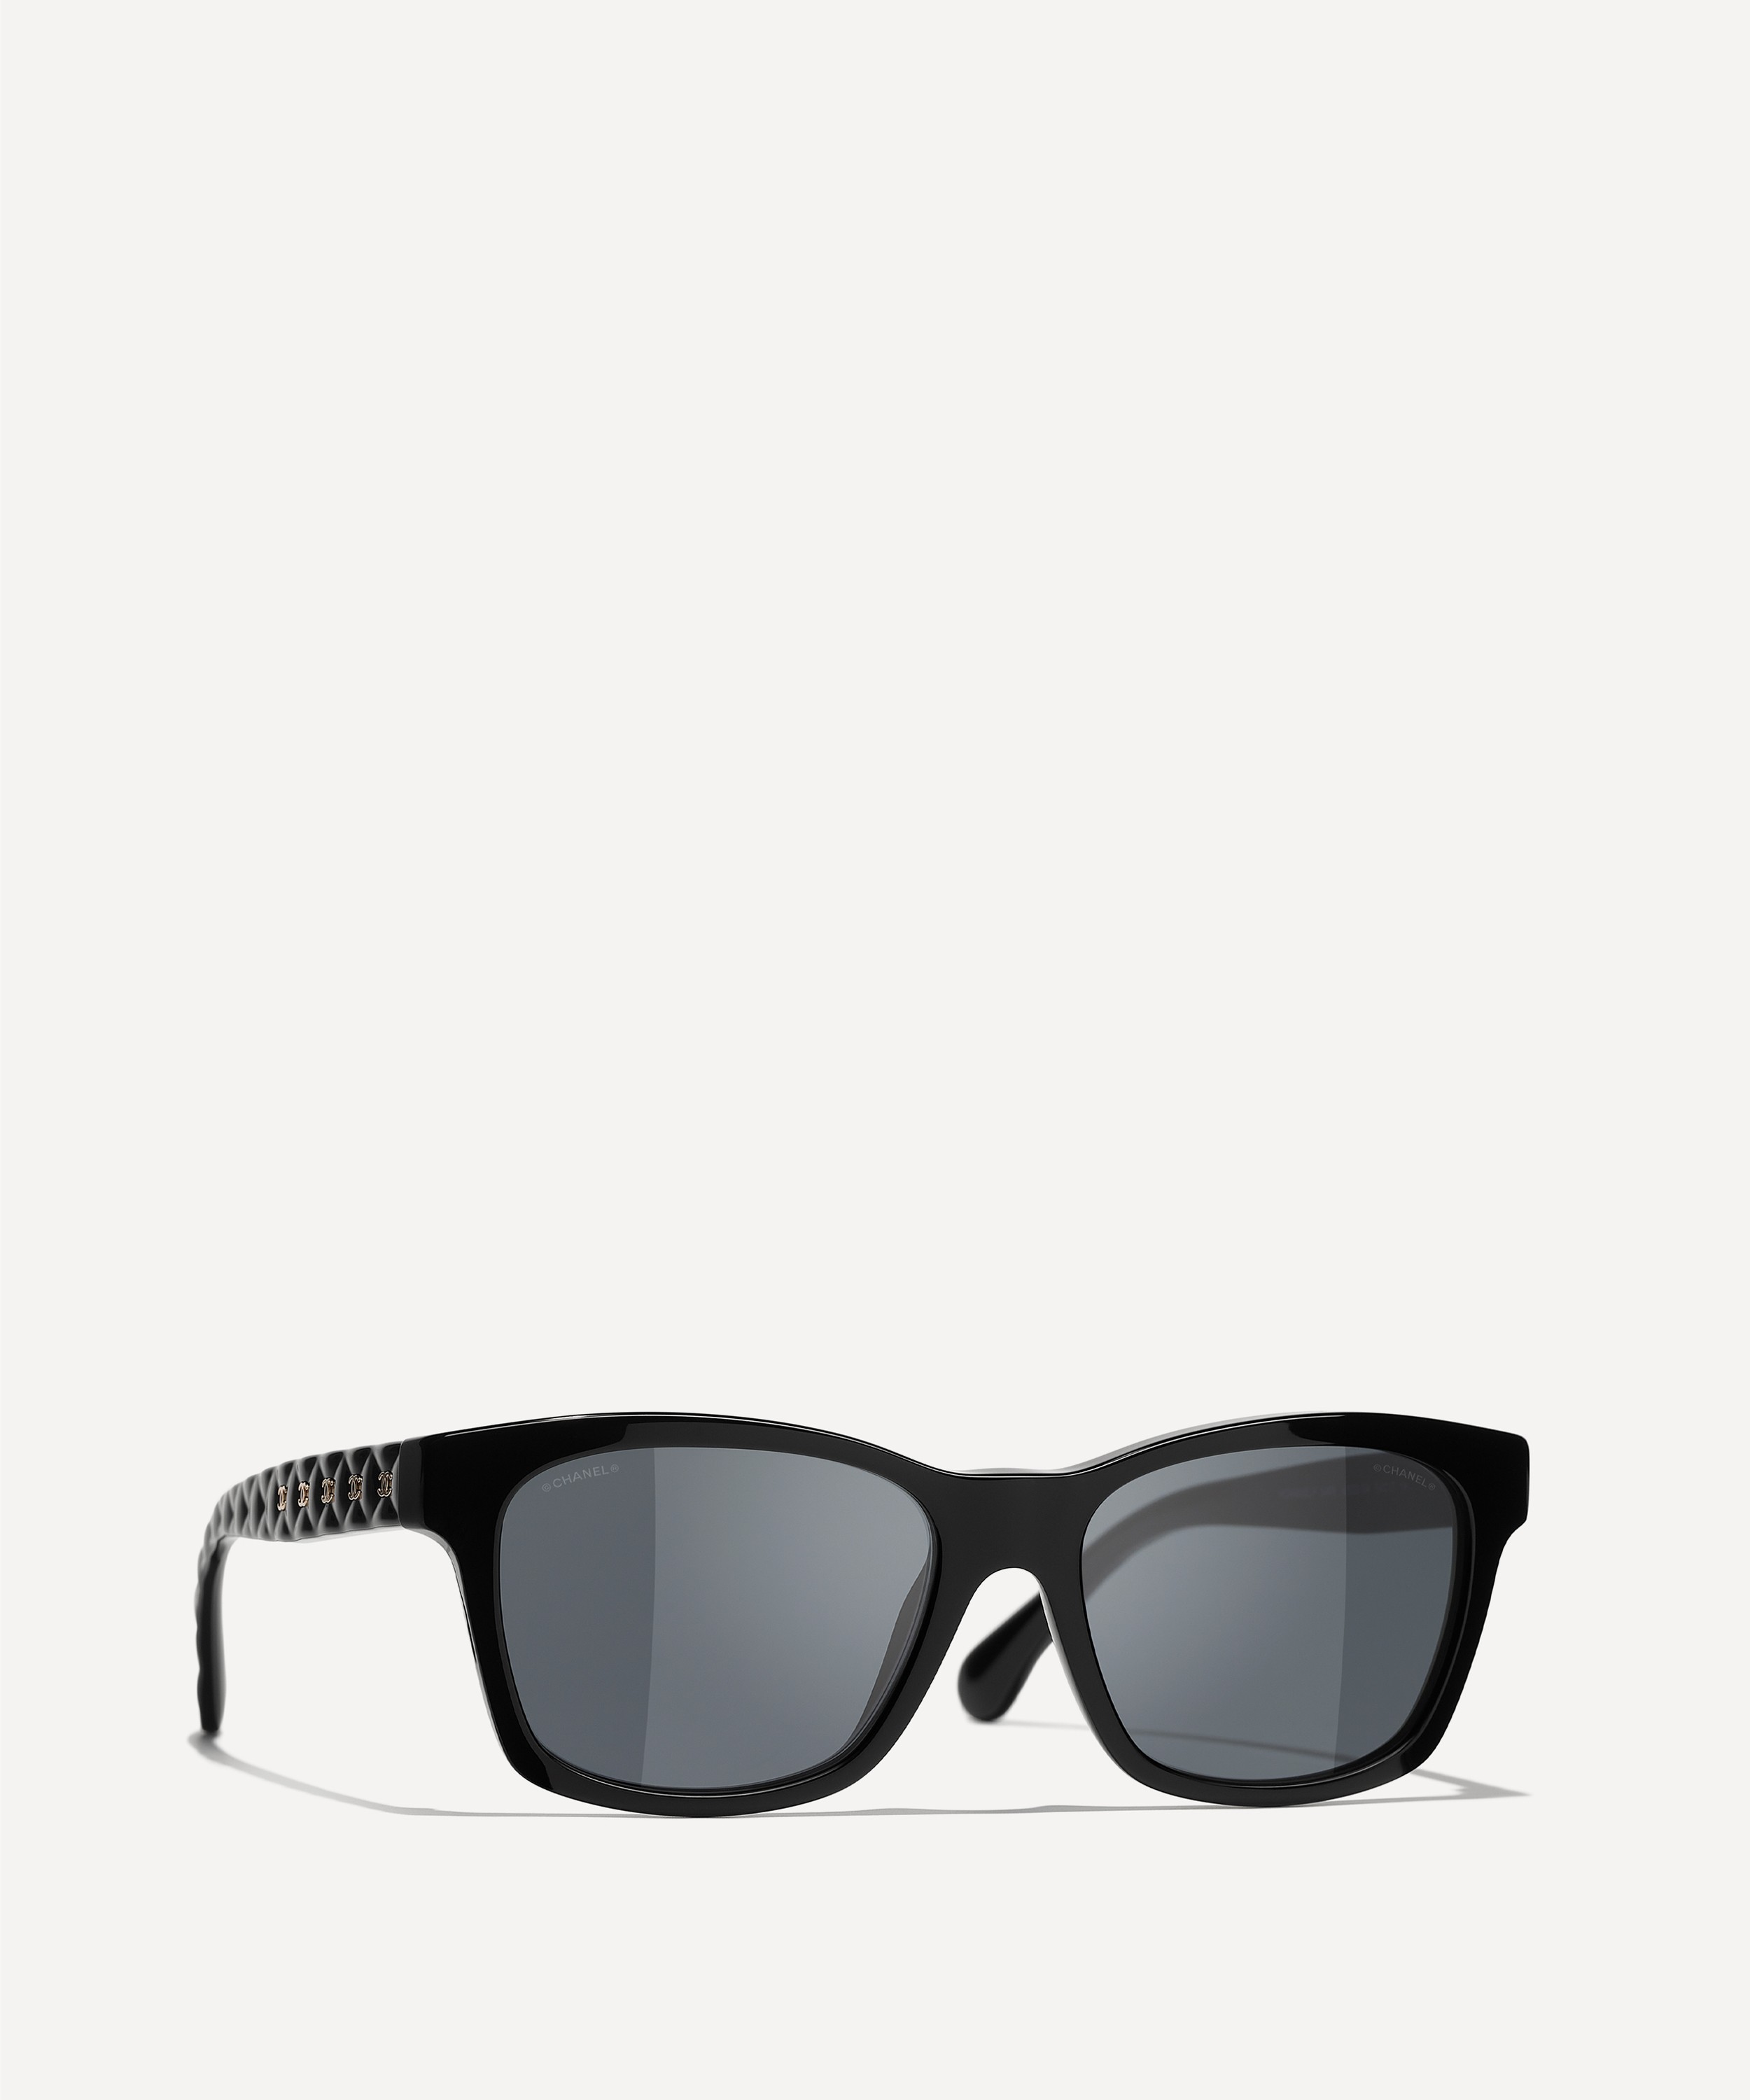 Chanel Women's Square Sunglasses